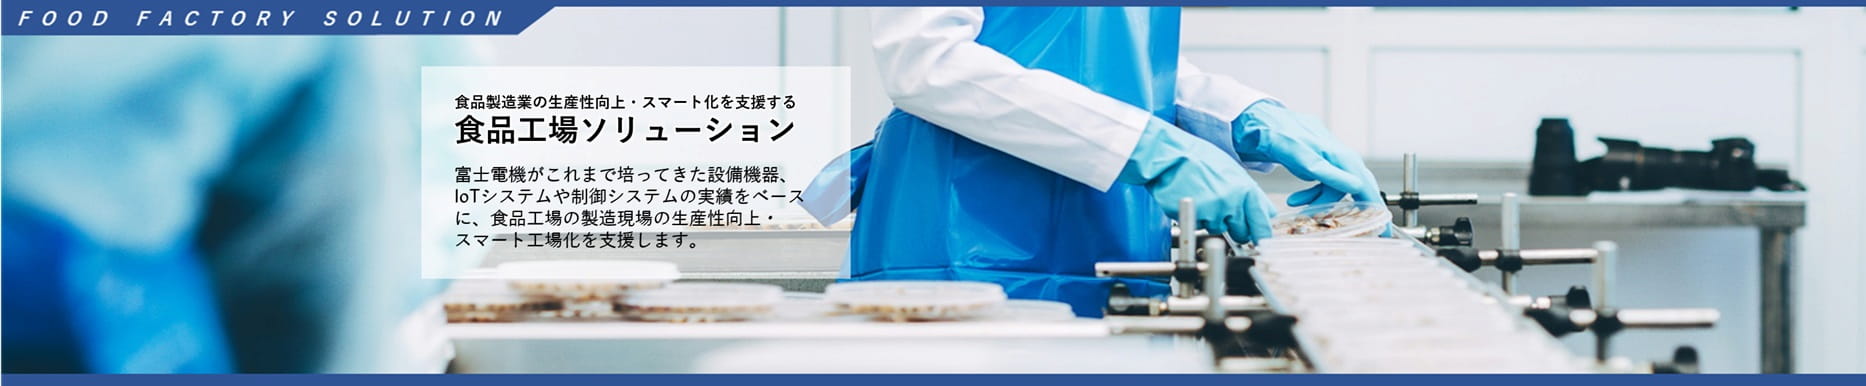 富士電機の食品工場ソリューショントップ